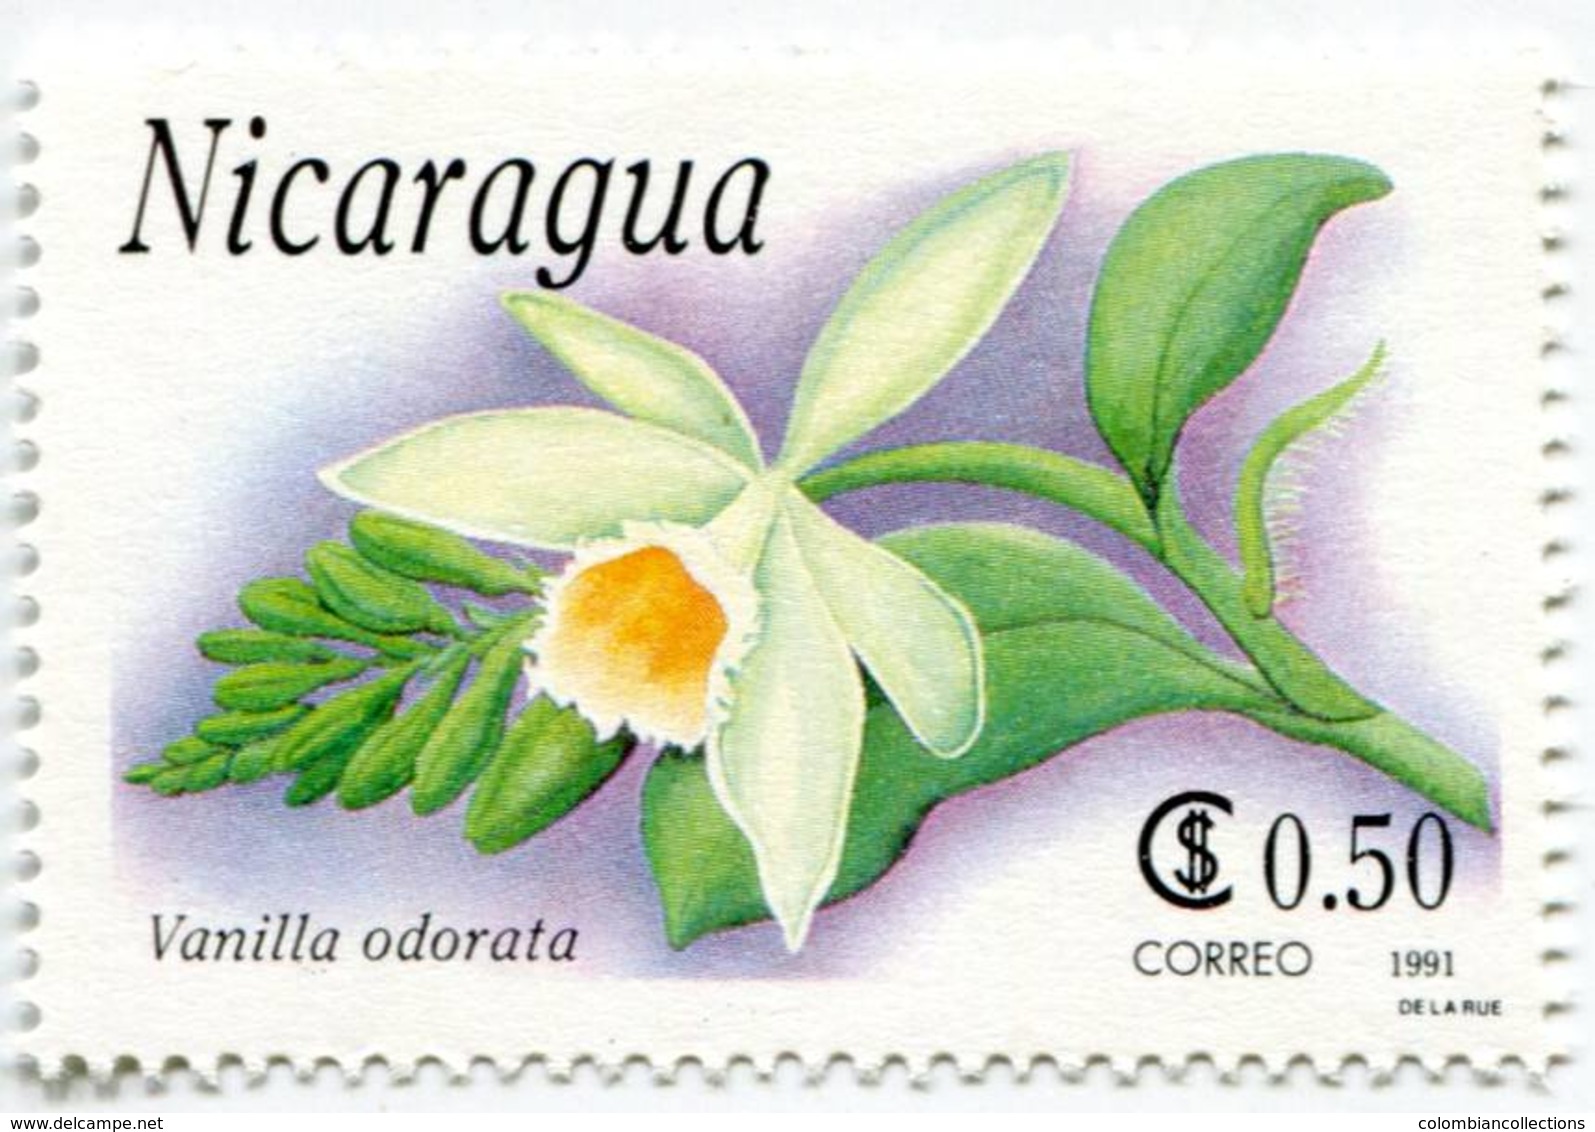 Lote 1991, Nicaragua, 1863-9, Sello, Stamp, 7 v, Orquidea, Orchid